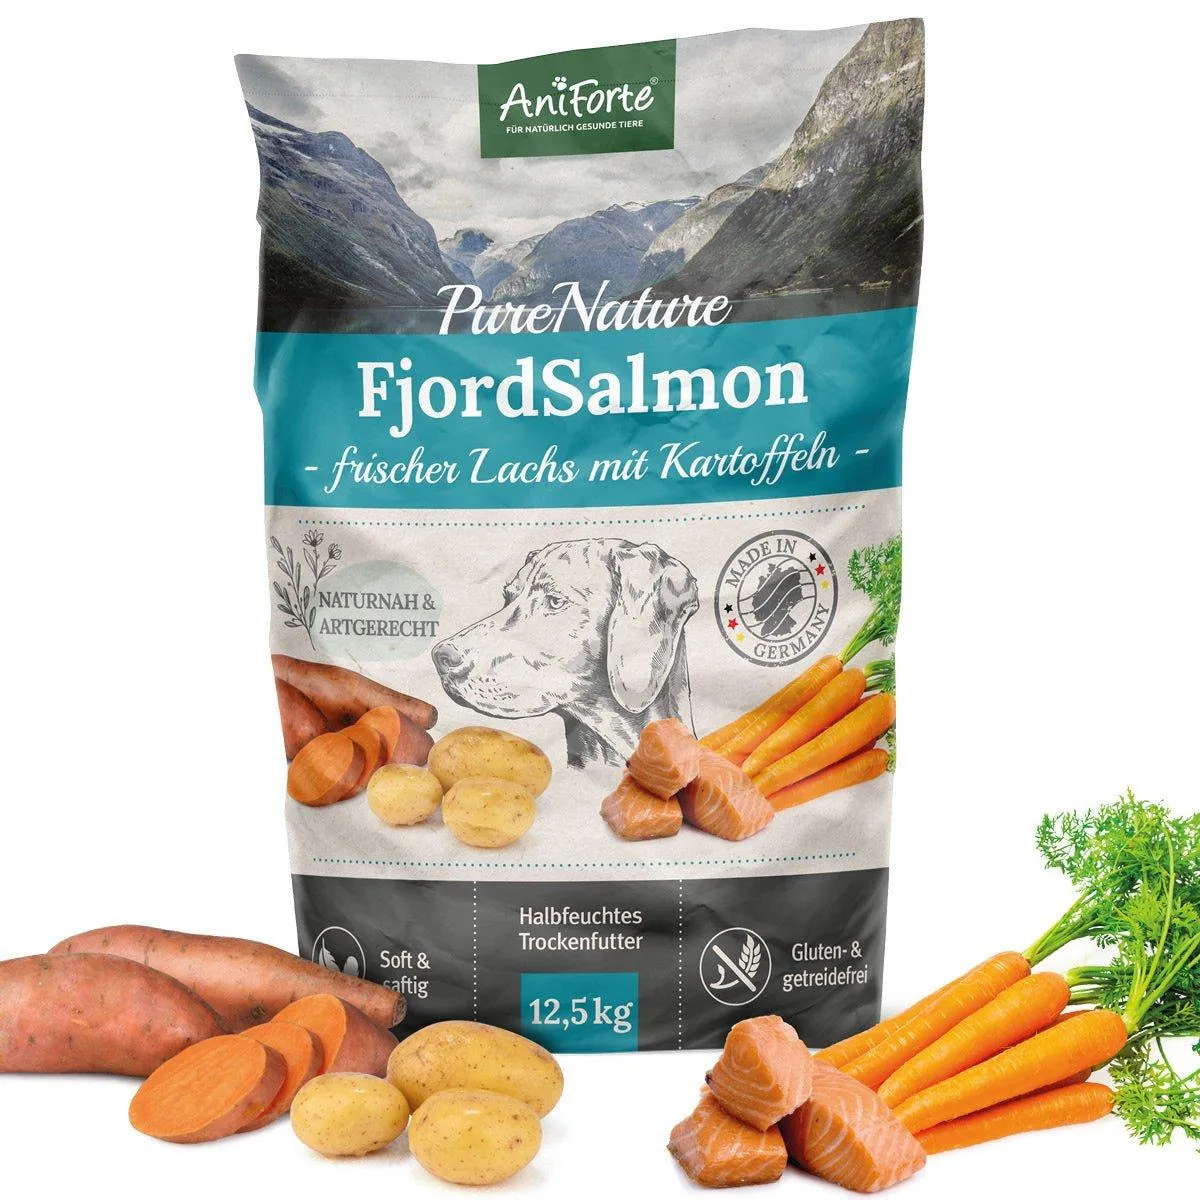 Bild von Trockenfutter FjordSalmon - Frischer Lachs mit Kartoffeln 7 kg